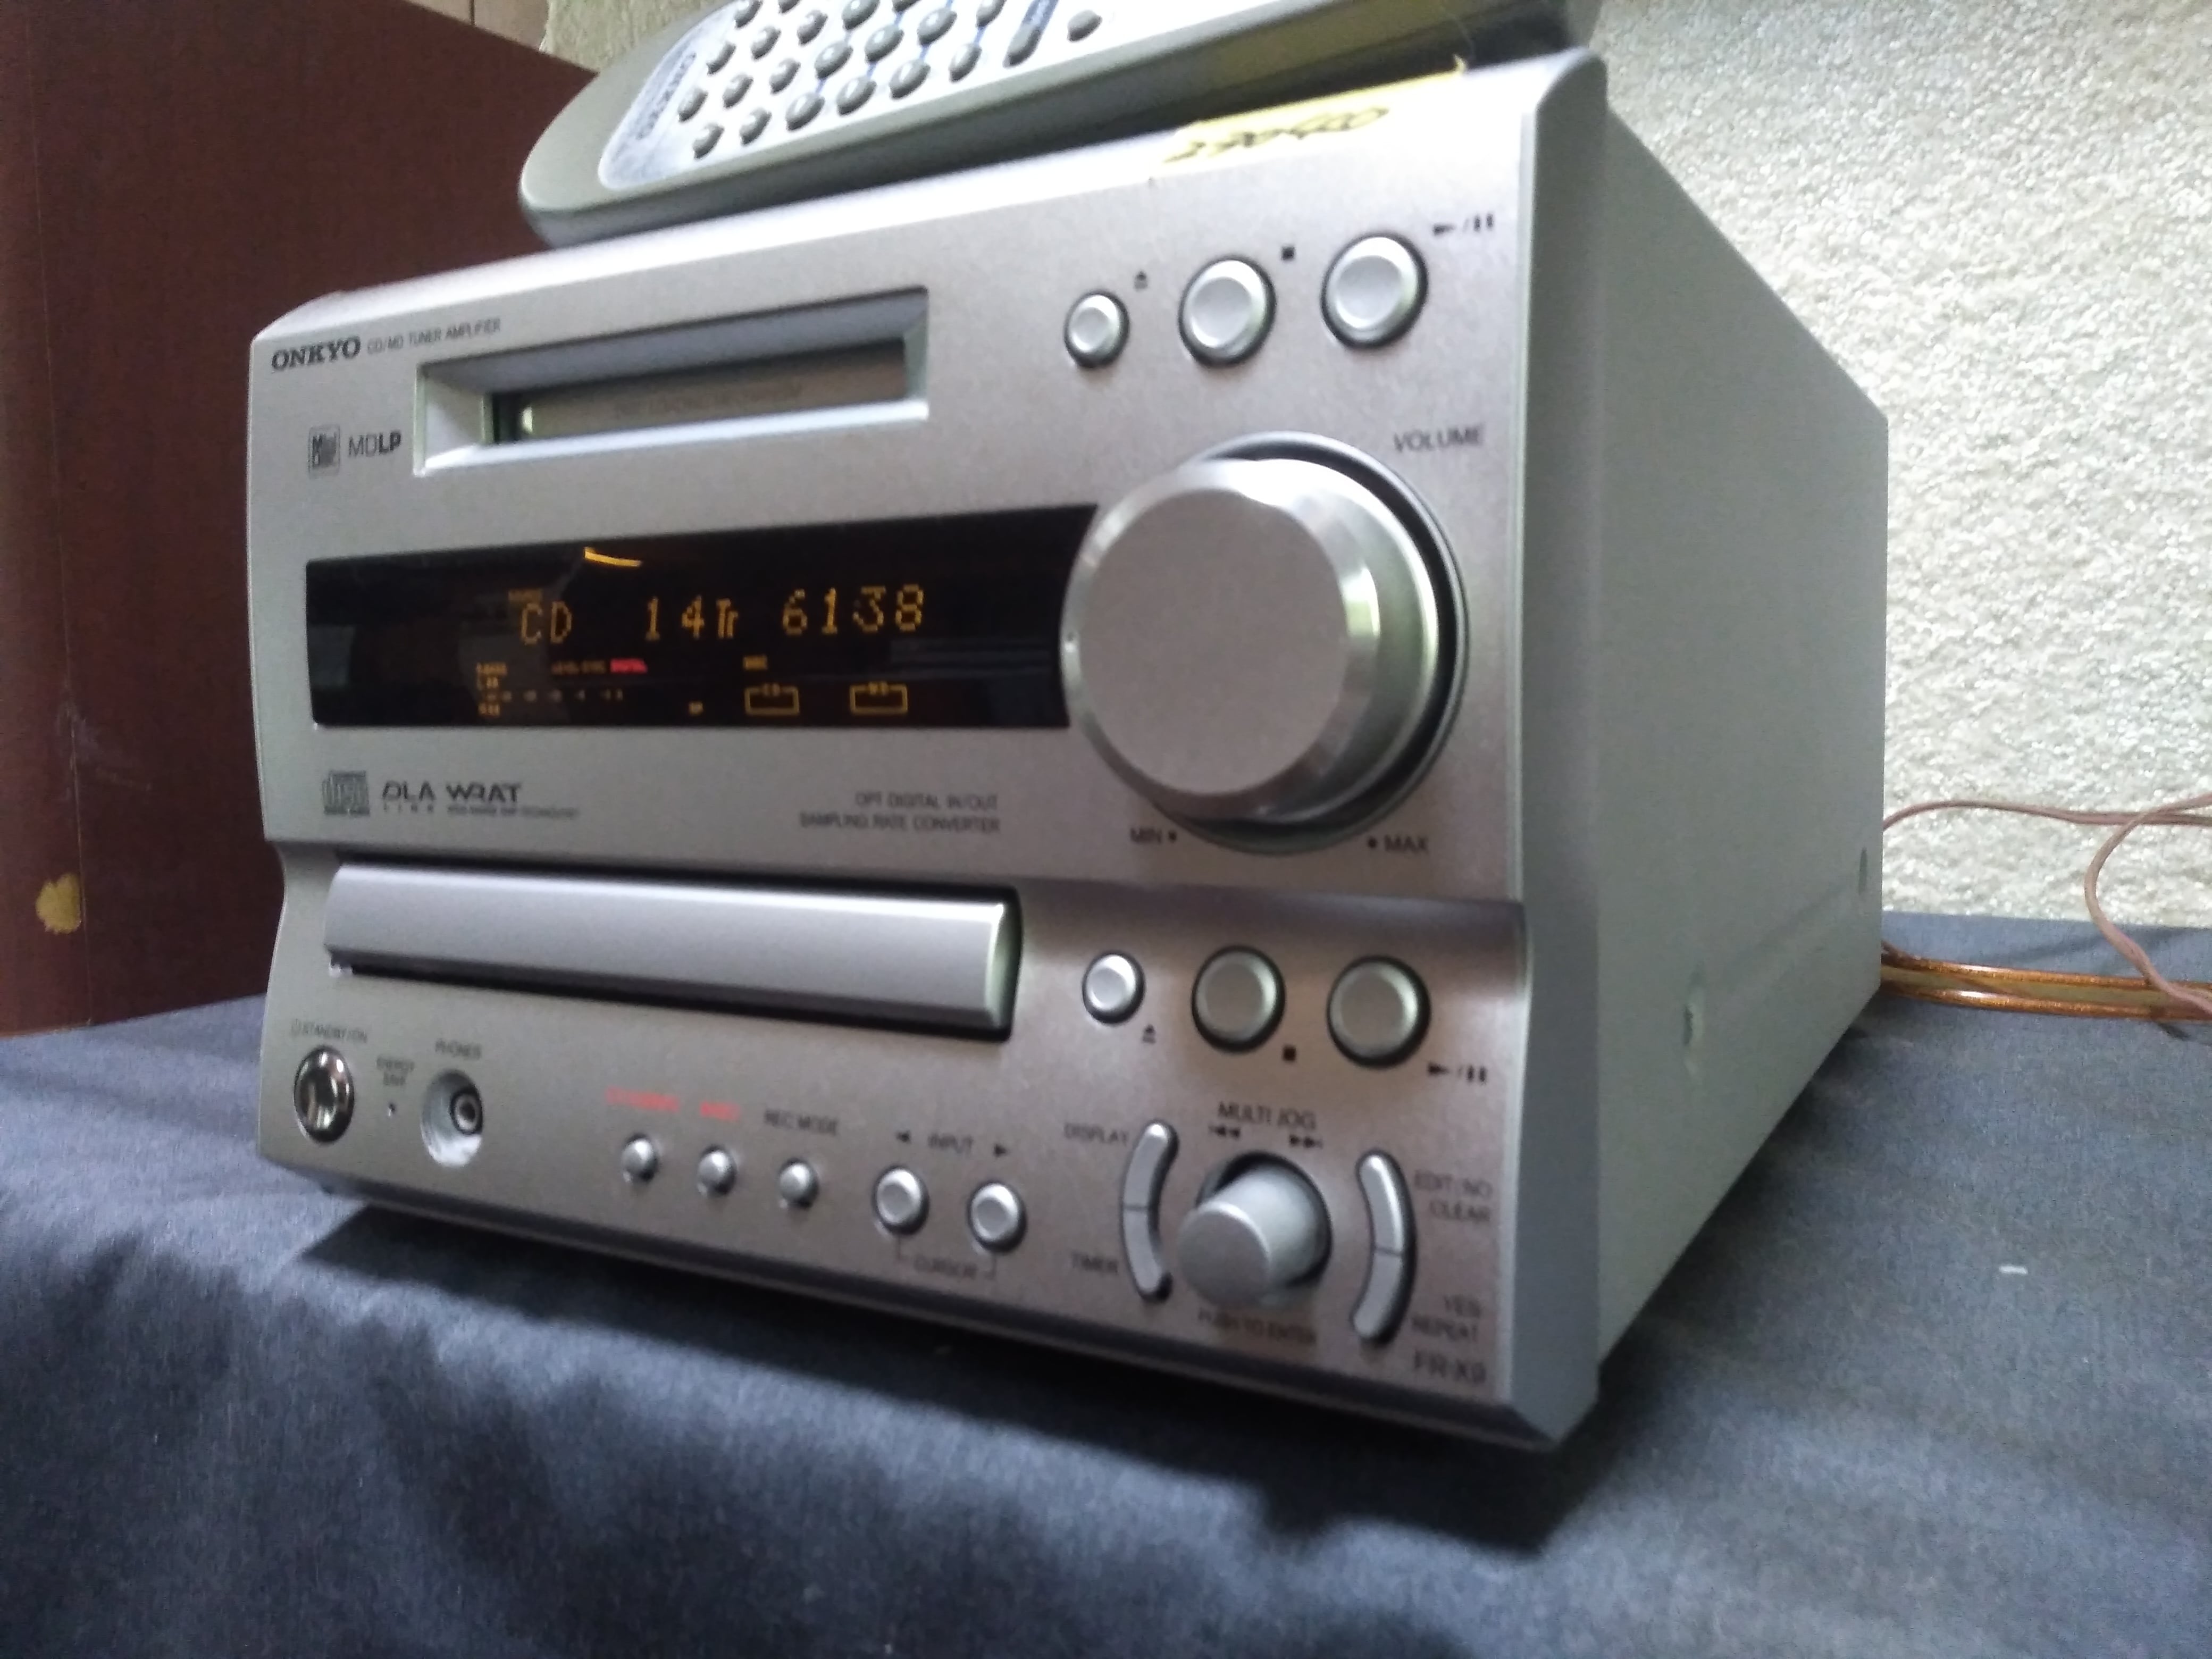 ONKYO オンキョー FR-X9A CD/MD/AM/FMラジオチューナーコンポ | sport